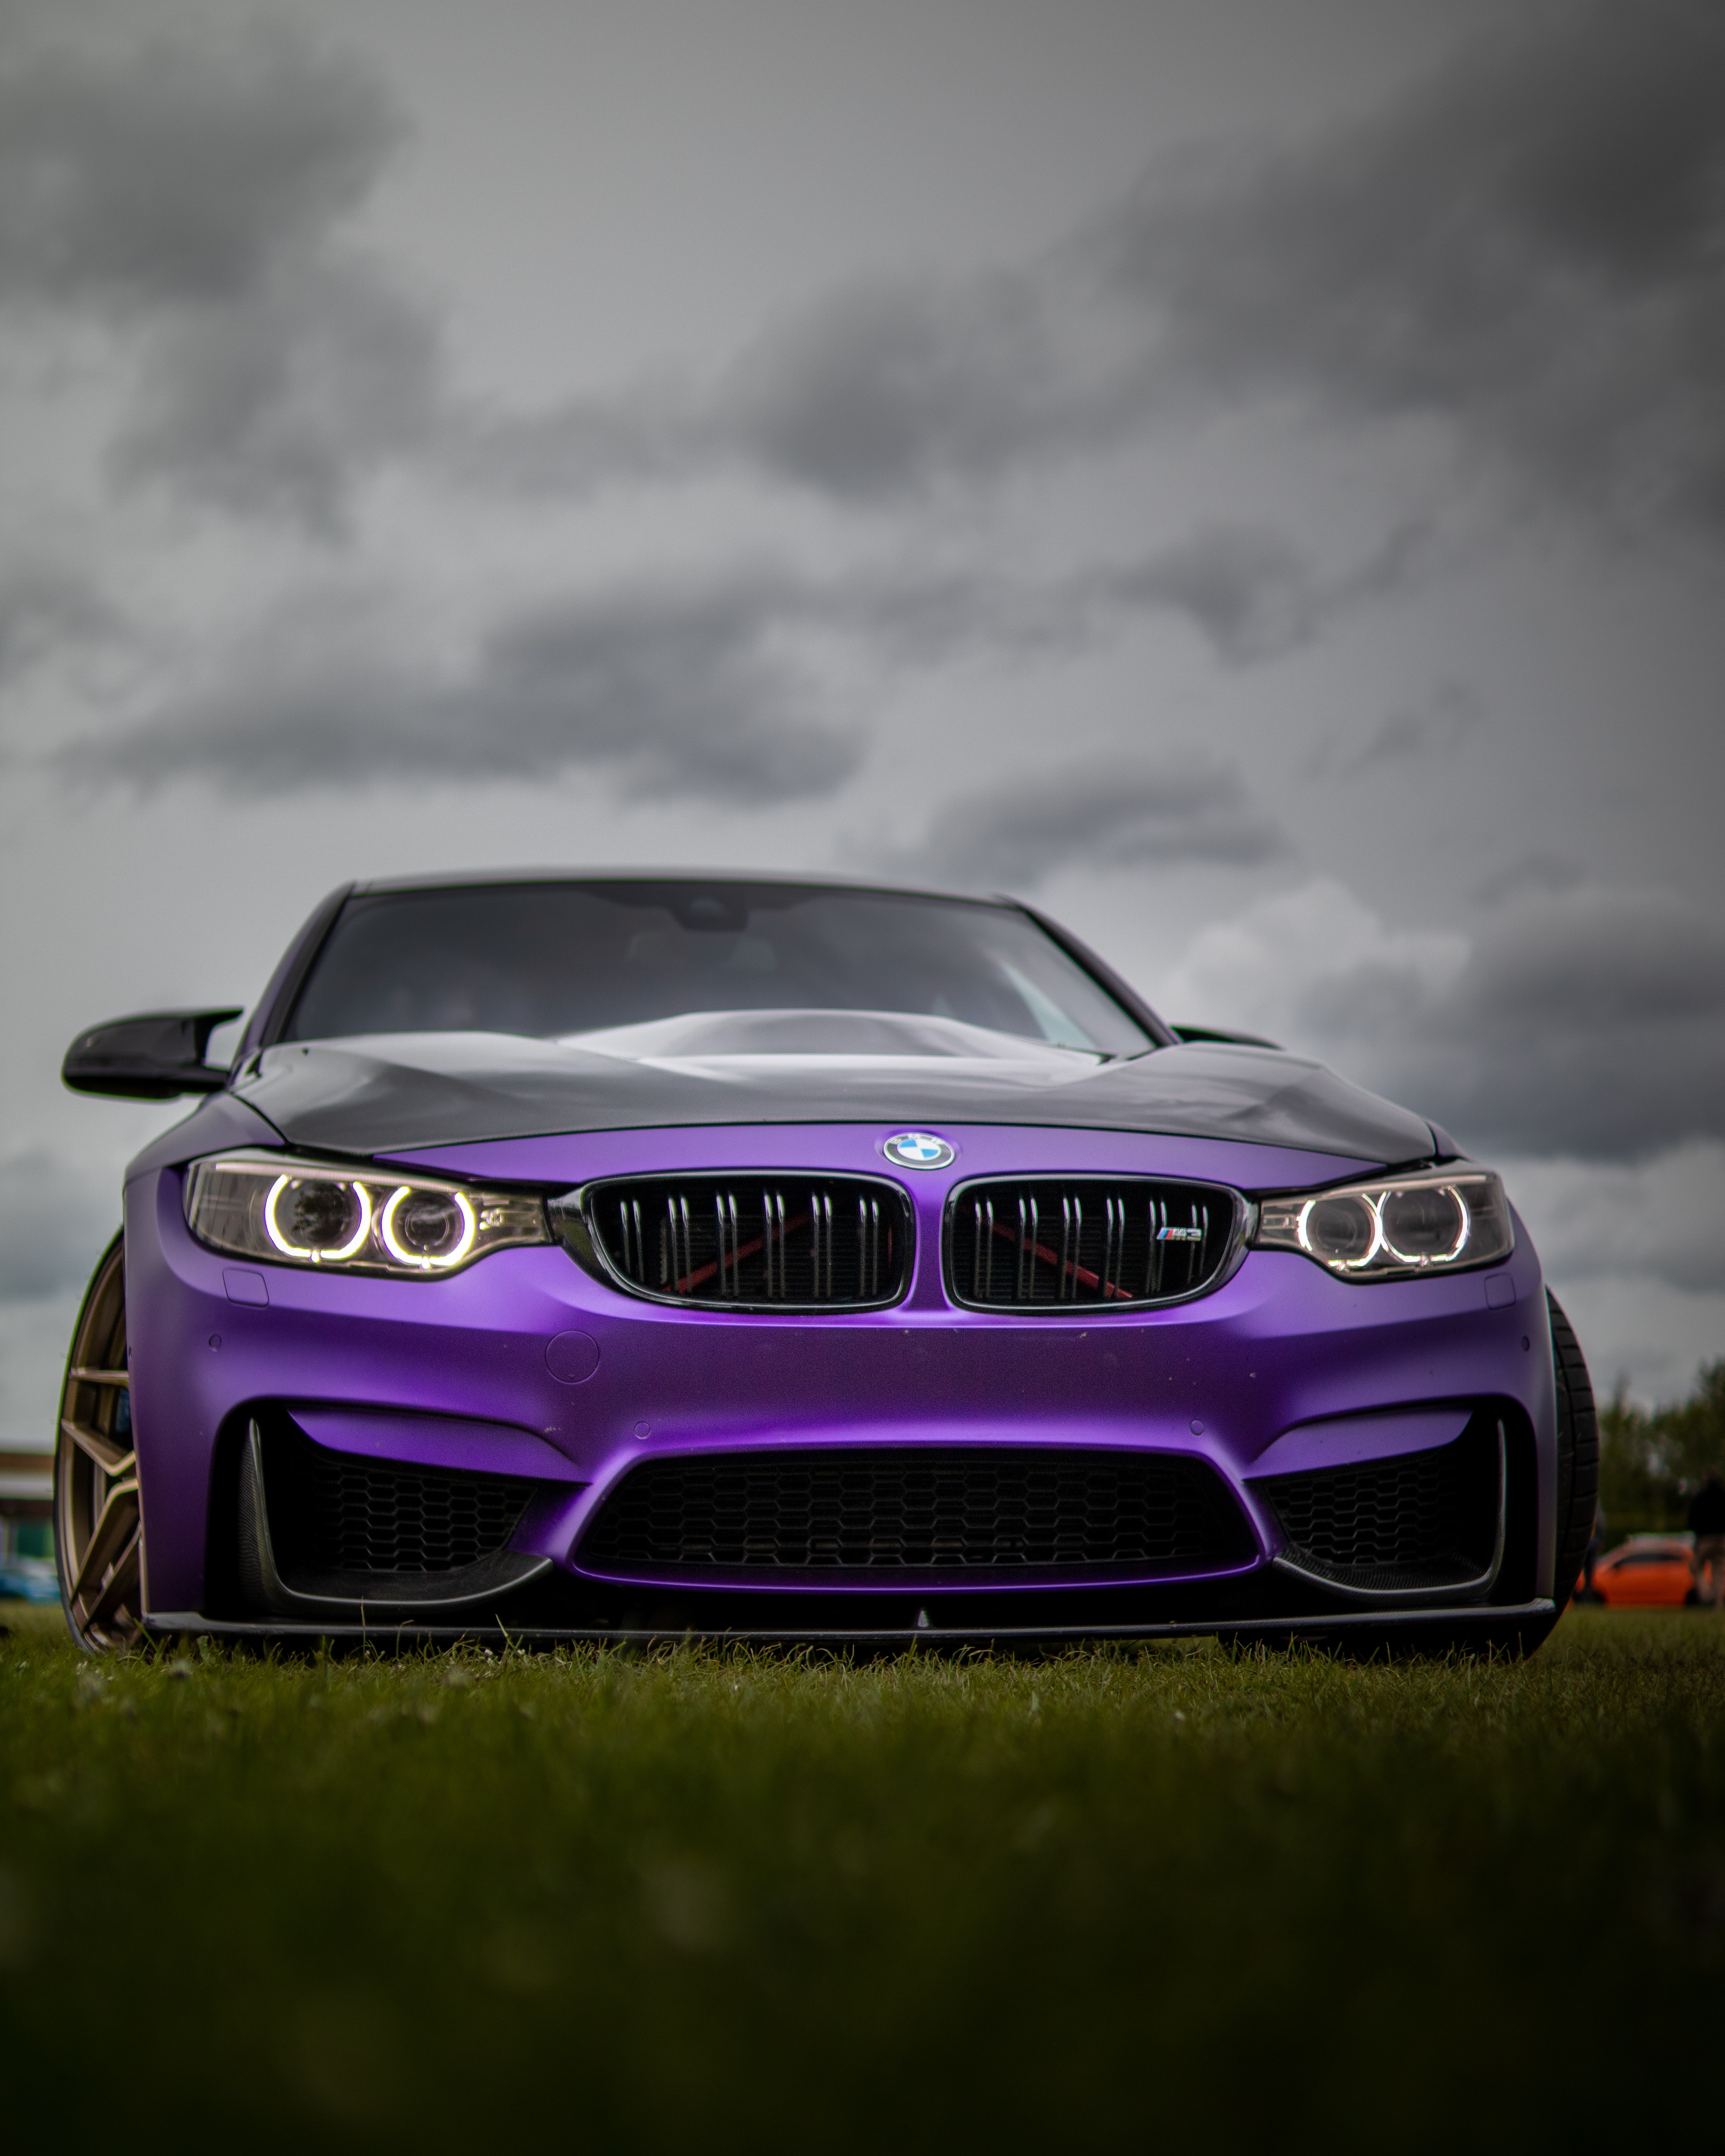 A Purple Bmw On Grass Under Dark Clouds